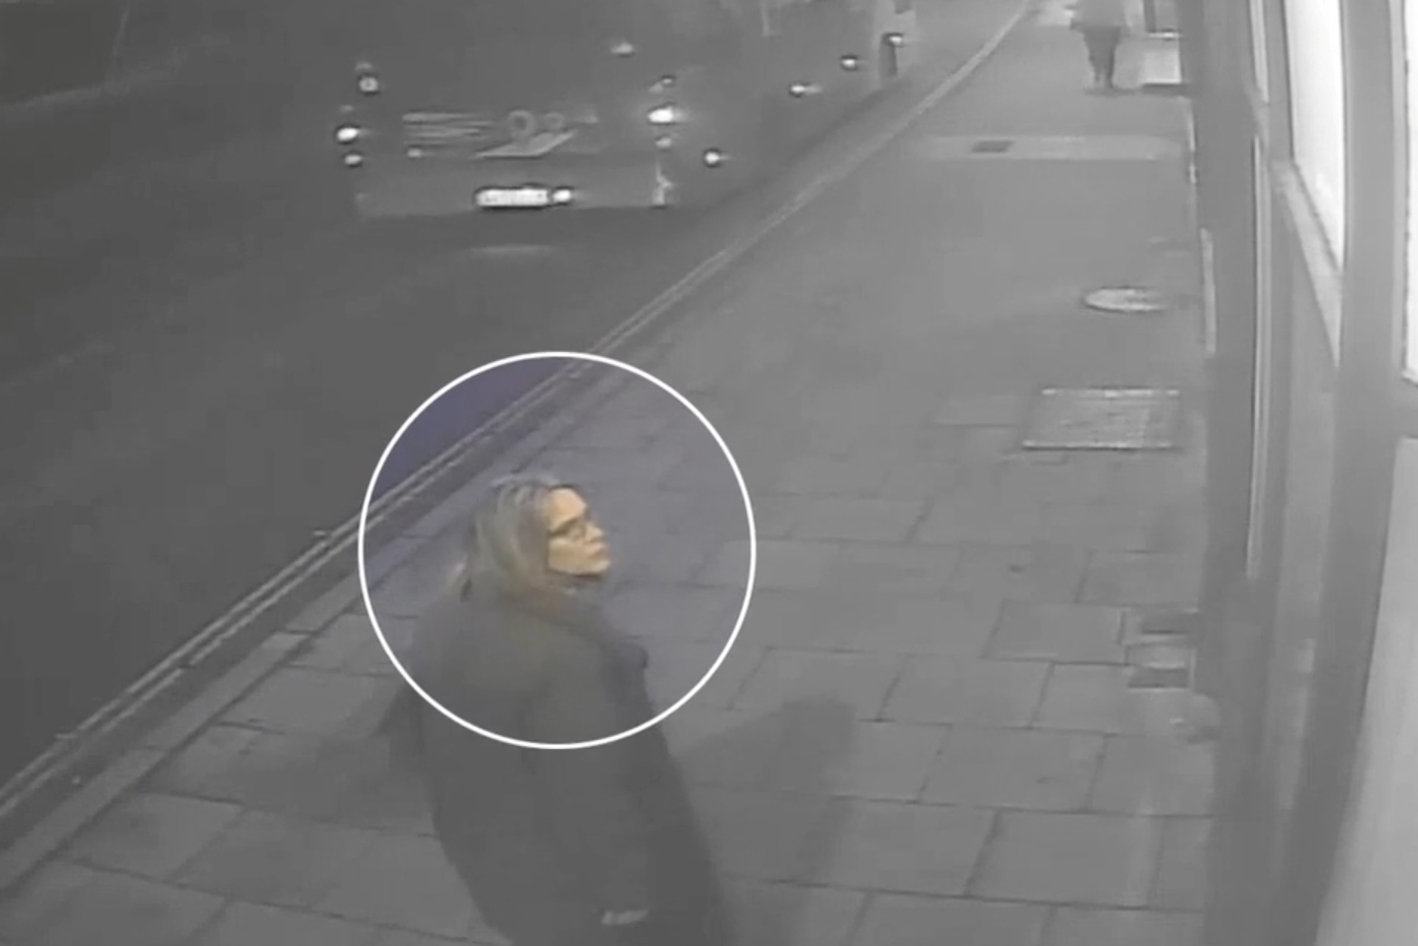 Die Polizei hat CCTV-Aufnahmen veröffentlicht, die die letzte Sichtung von Gaynor vor ihrem Verschwinden zeigen